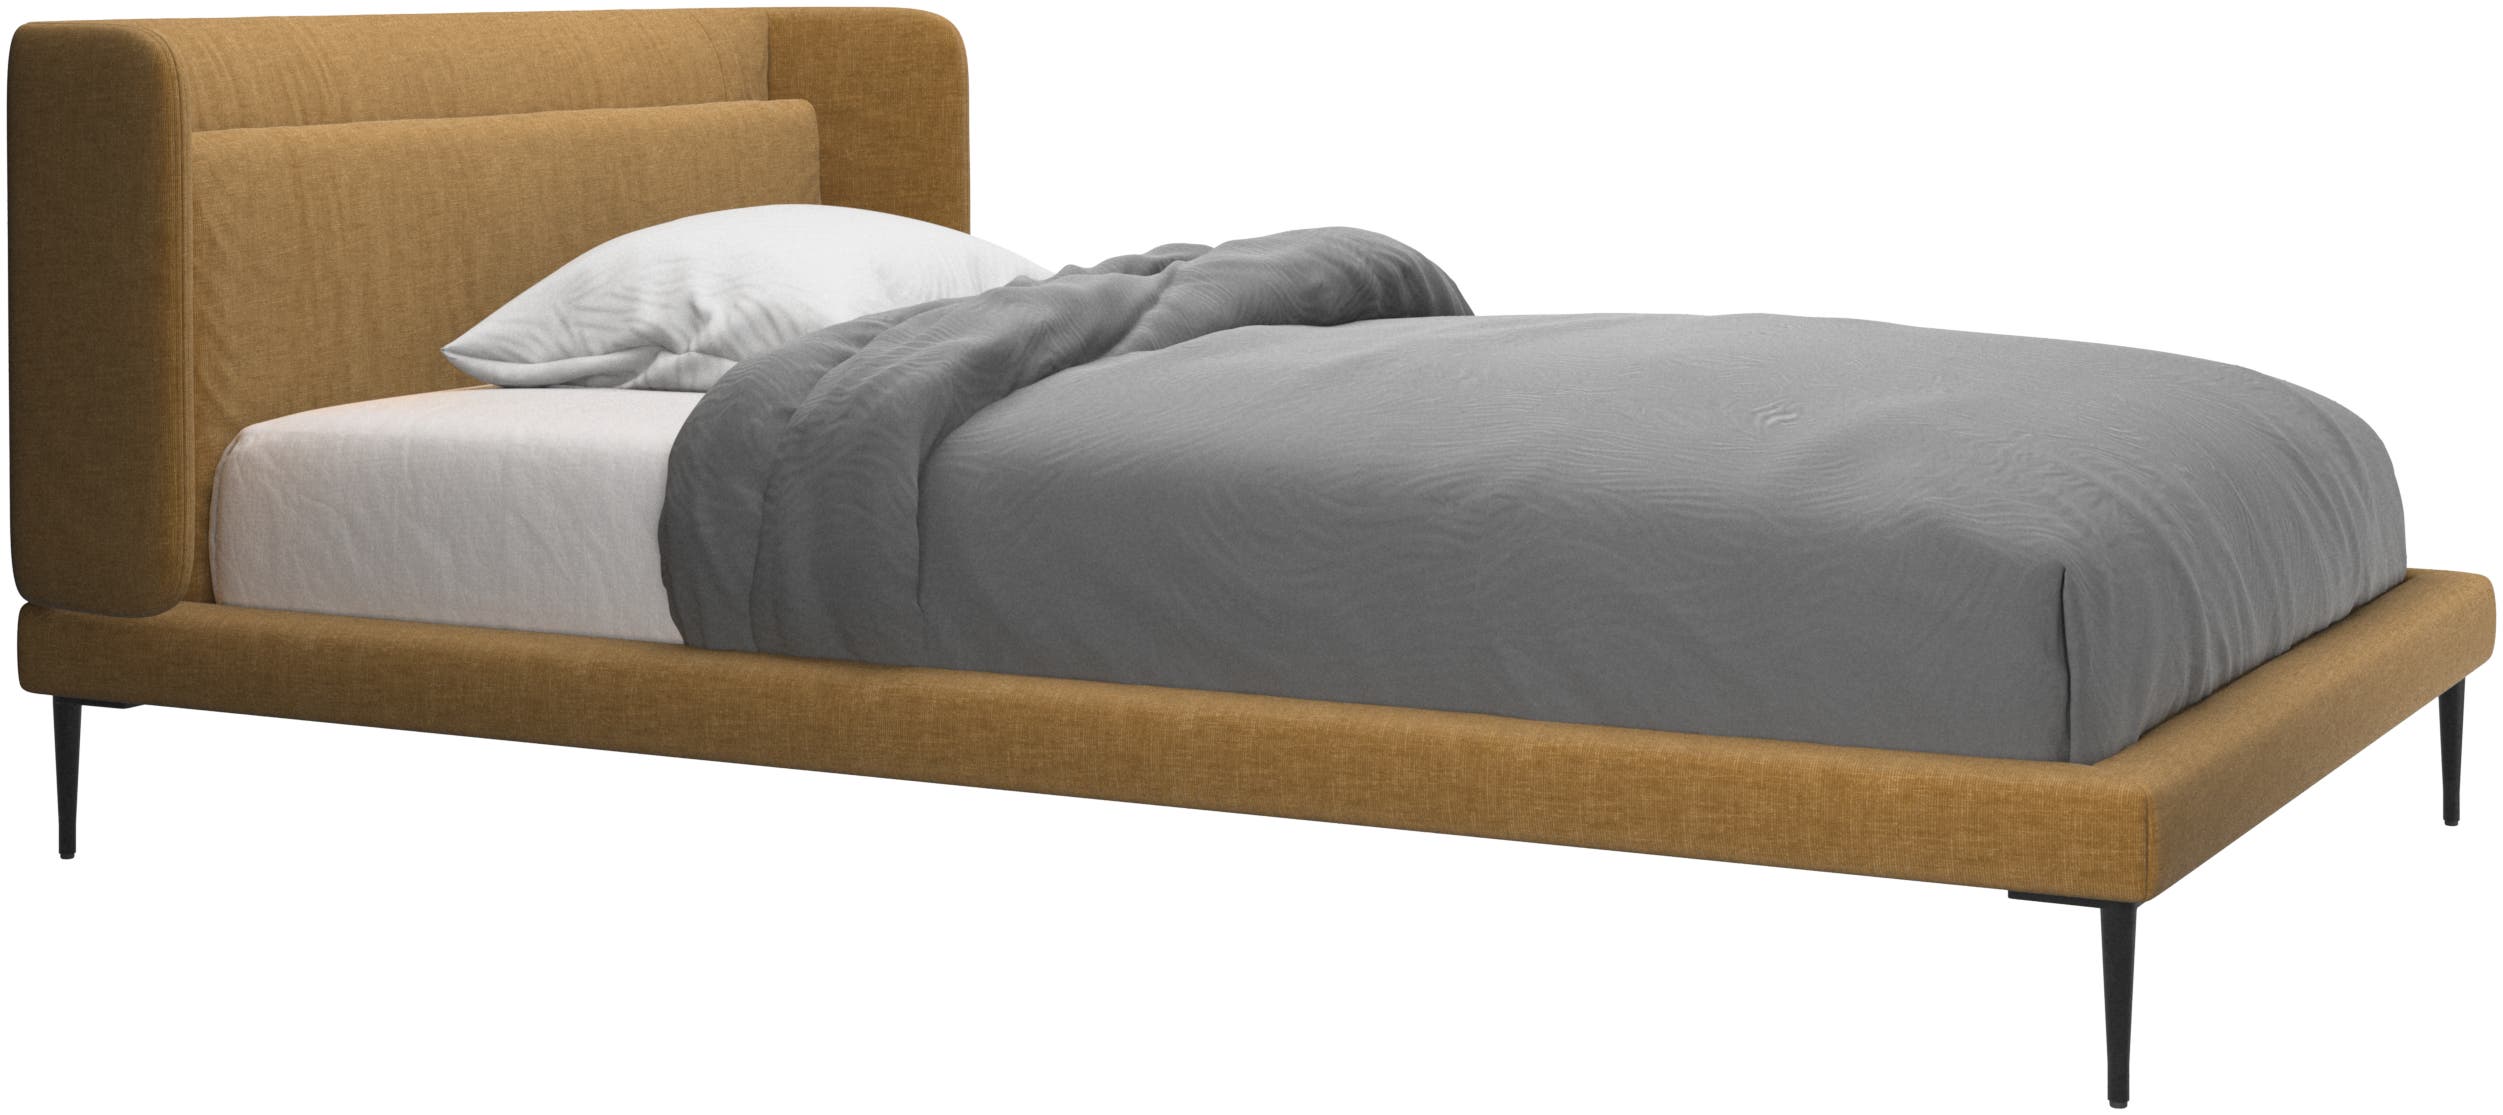 Austin bed, excl. mattress